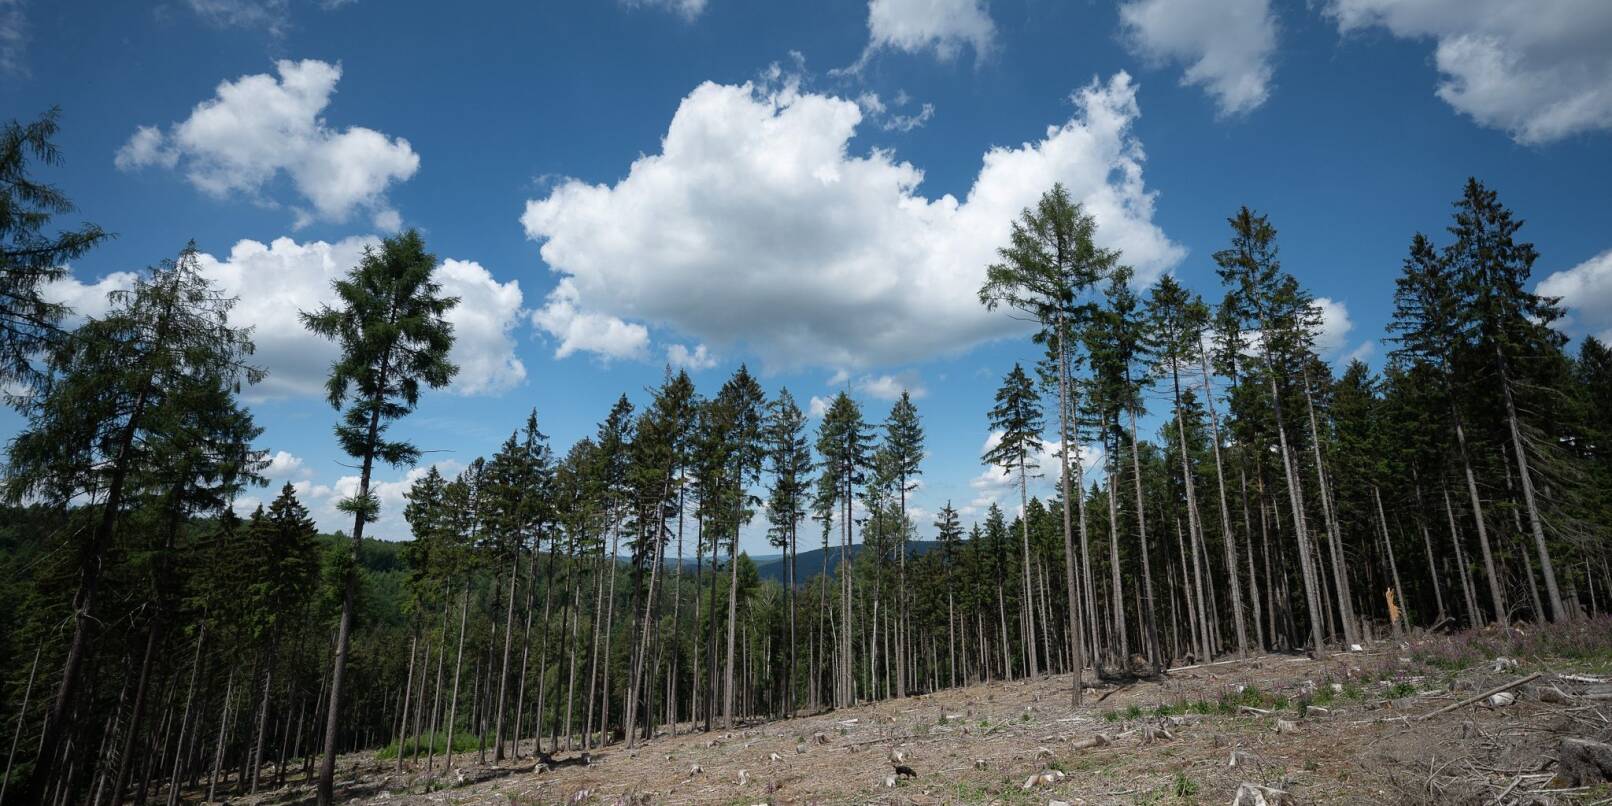 Trockene Bäume liegen in einer kahlen Stelle im Wald. Die Weltwirtschaft droht einer Studie zufolge durch Klimafolgen stark zu schrumpfen.